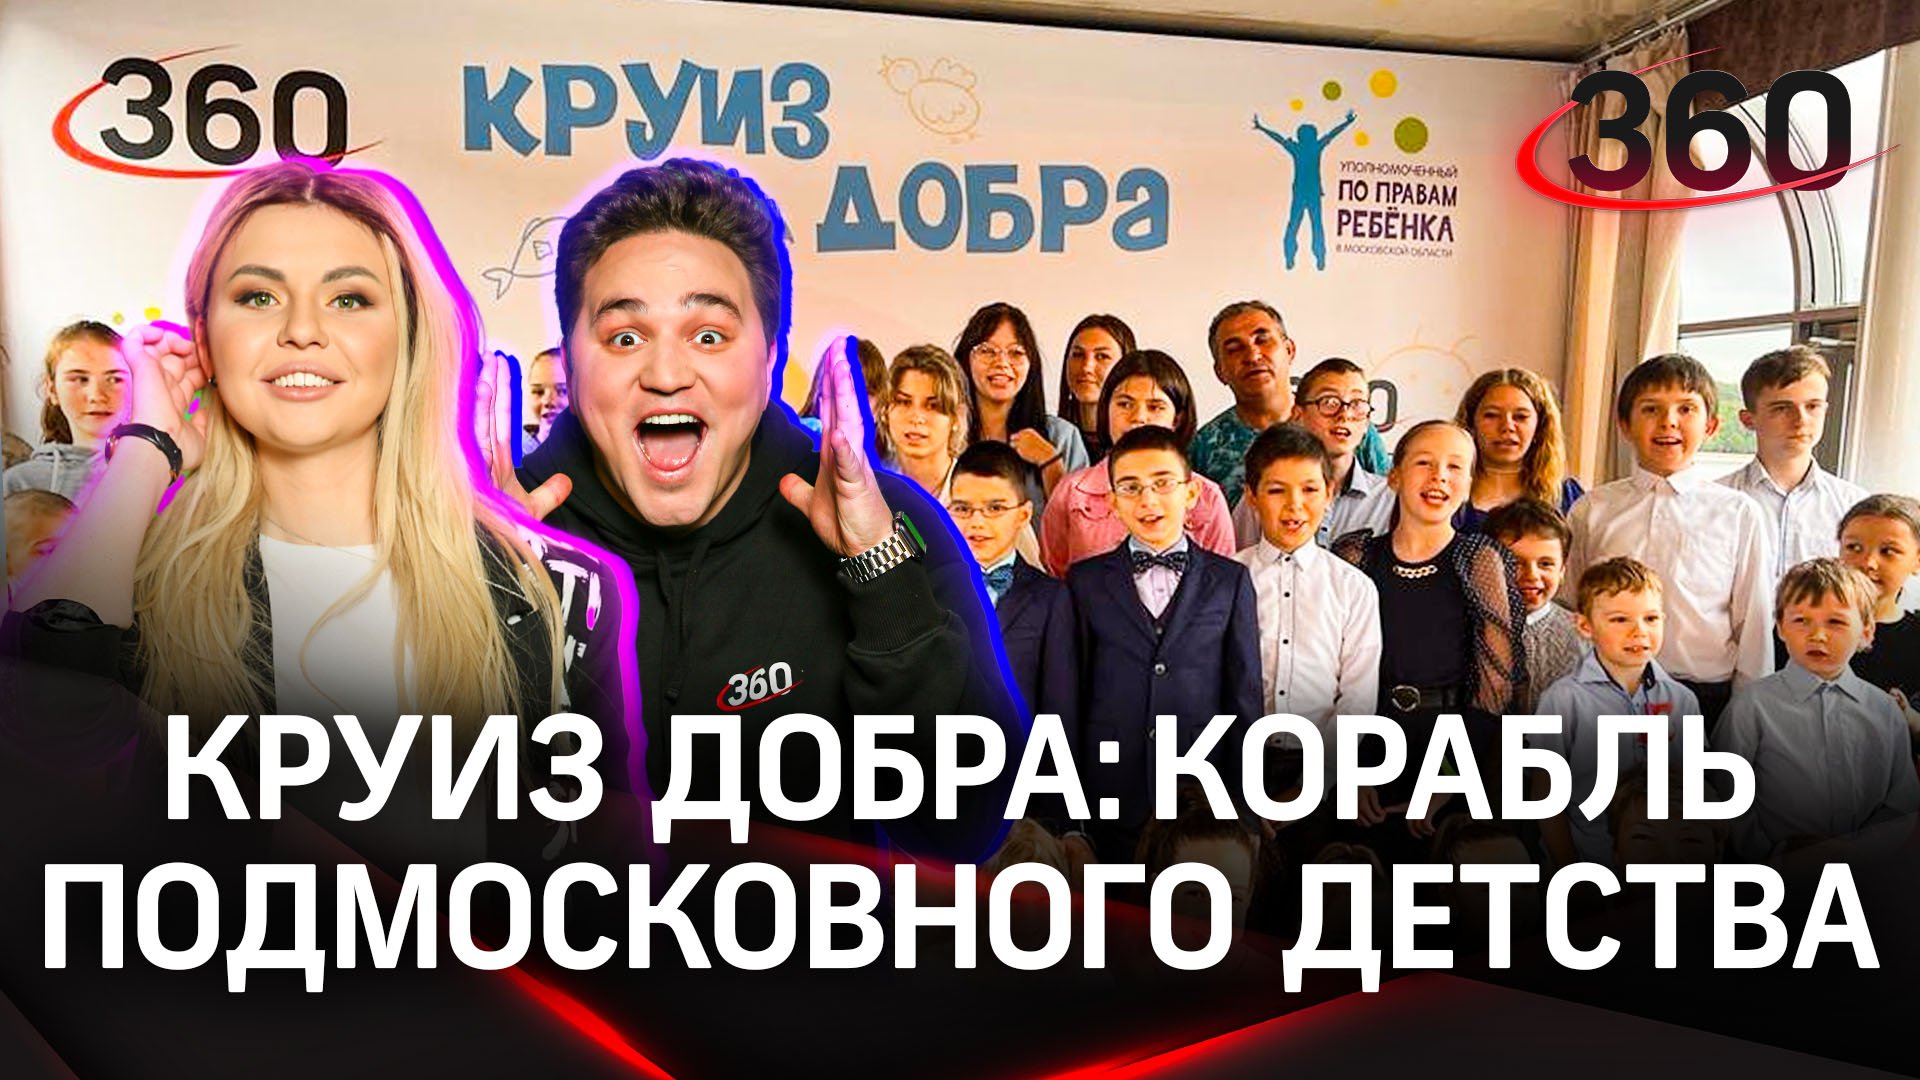 Телеканал «360» организовал для детей благотворительное мероприятие на просторах Москвы-реки